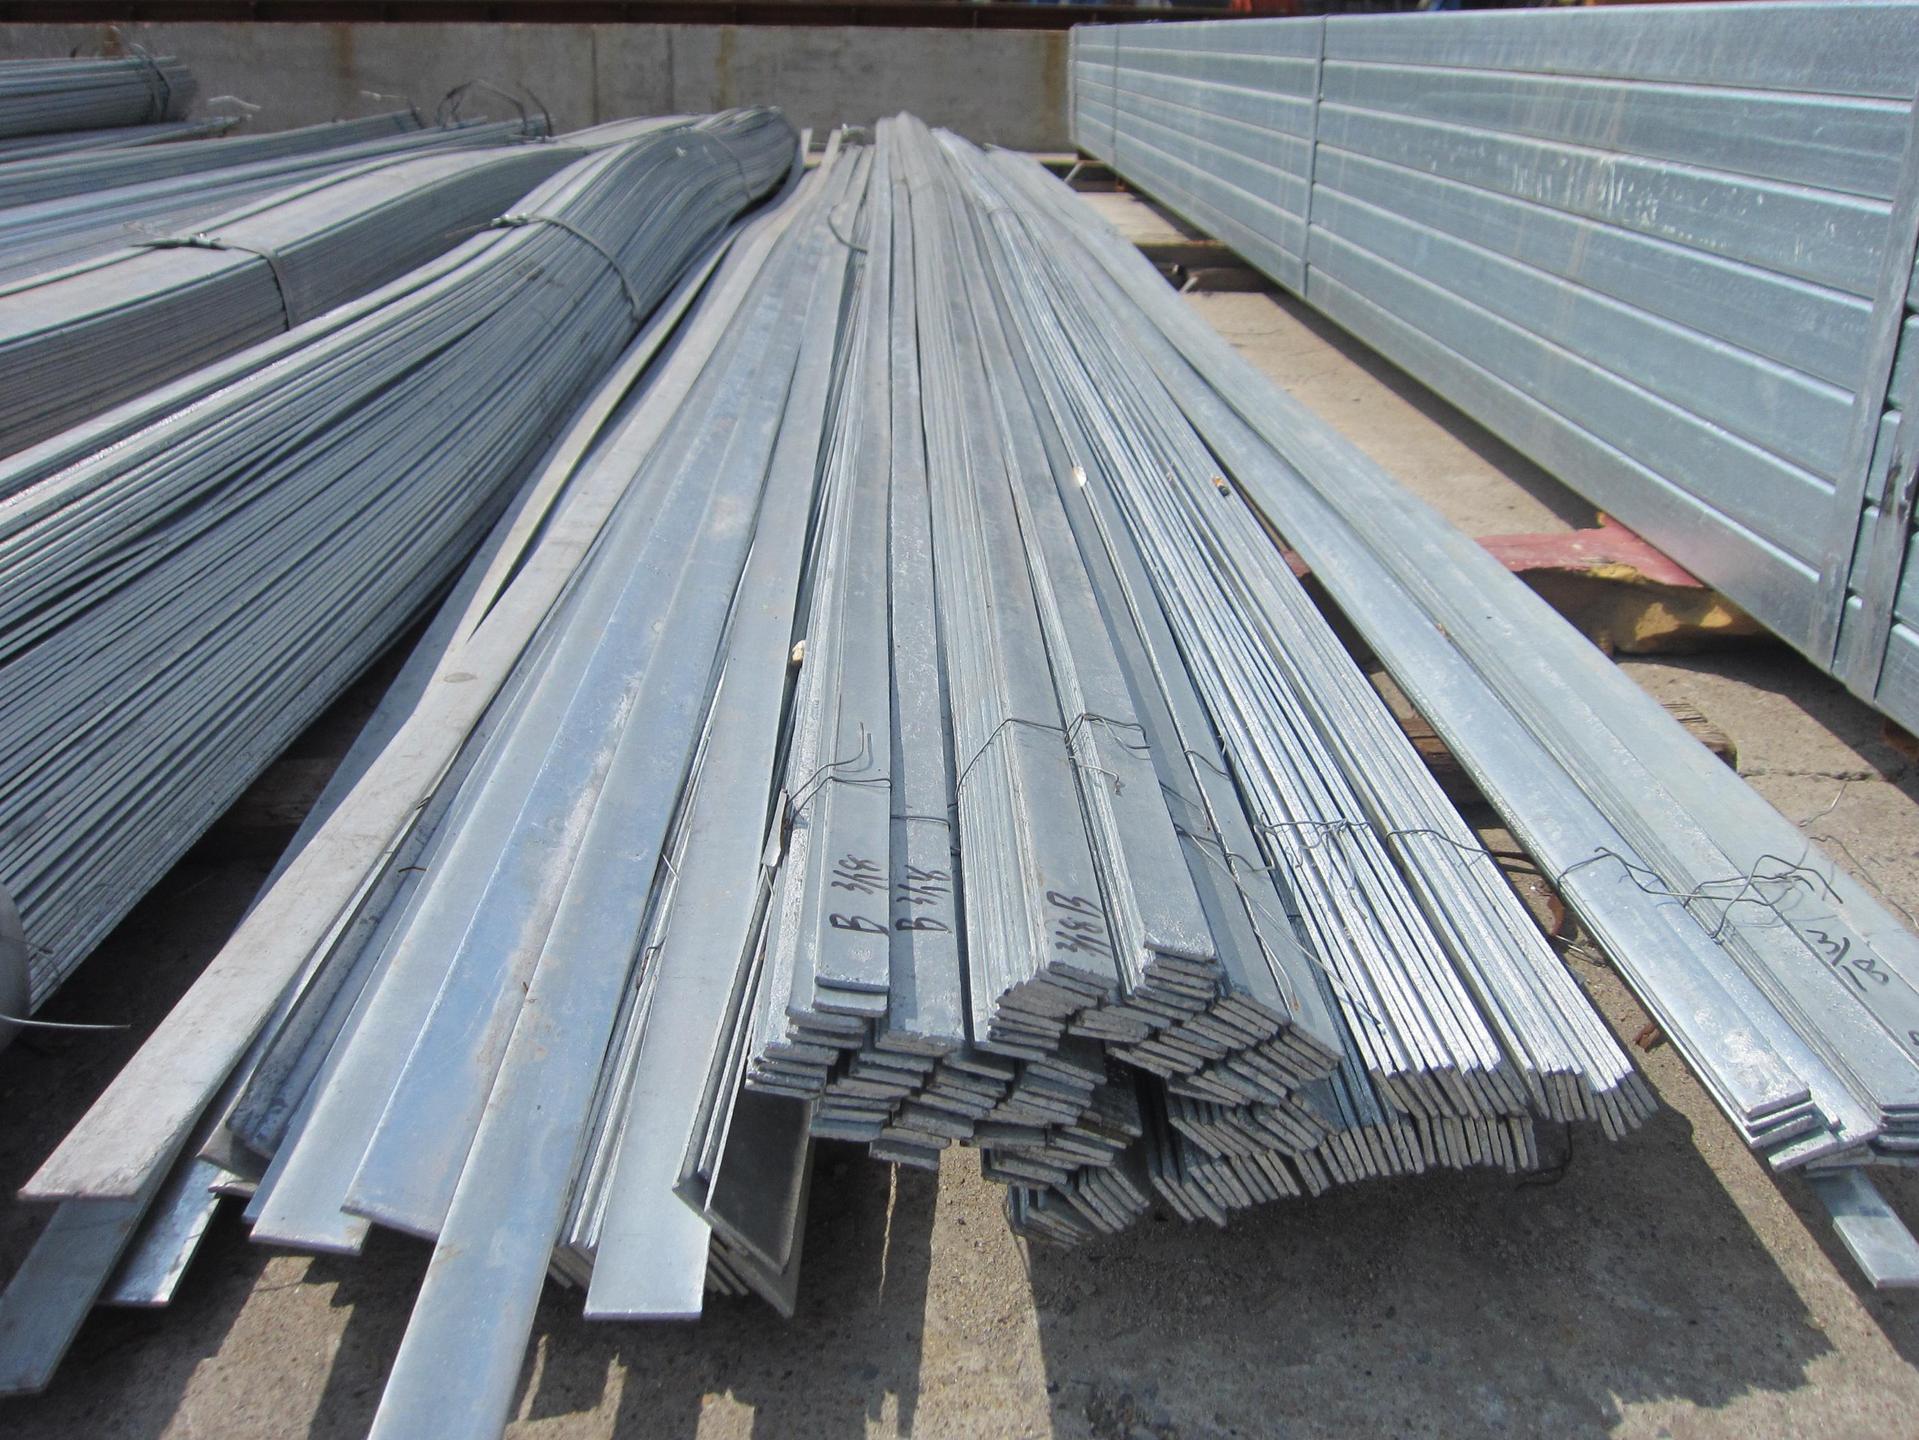 山东济南金属制品生产厂家现有现货5000吨扁钢规格型号齐全质优价廉期待您的来电